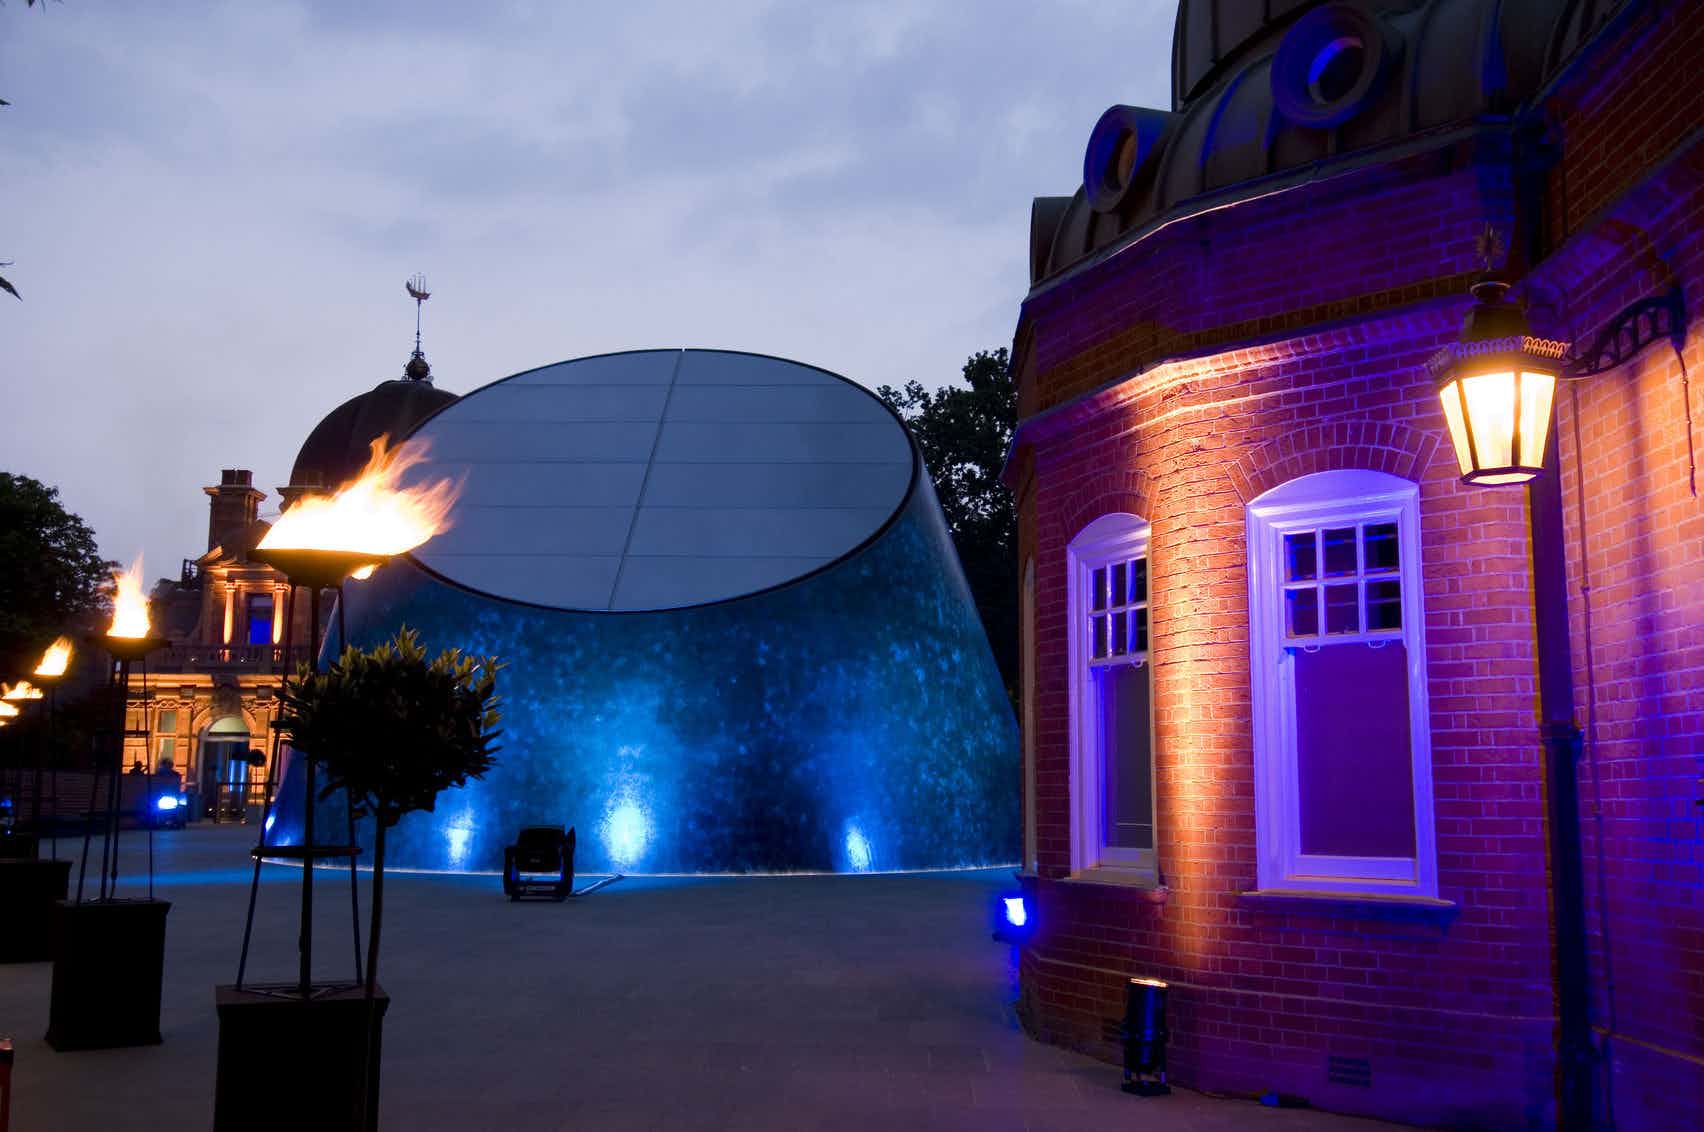 Peter Harrison Planetarium